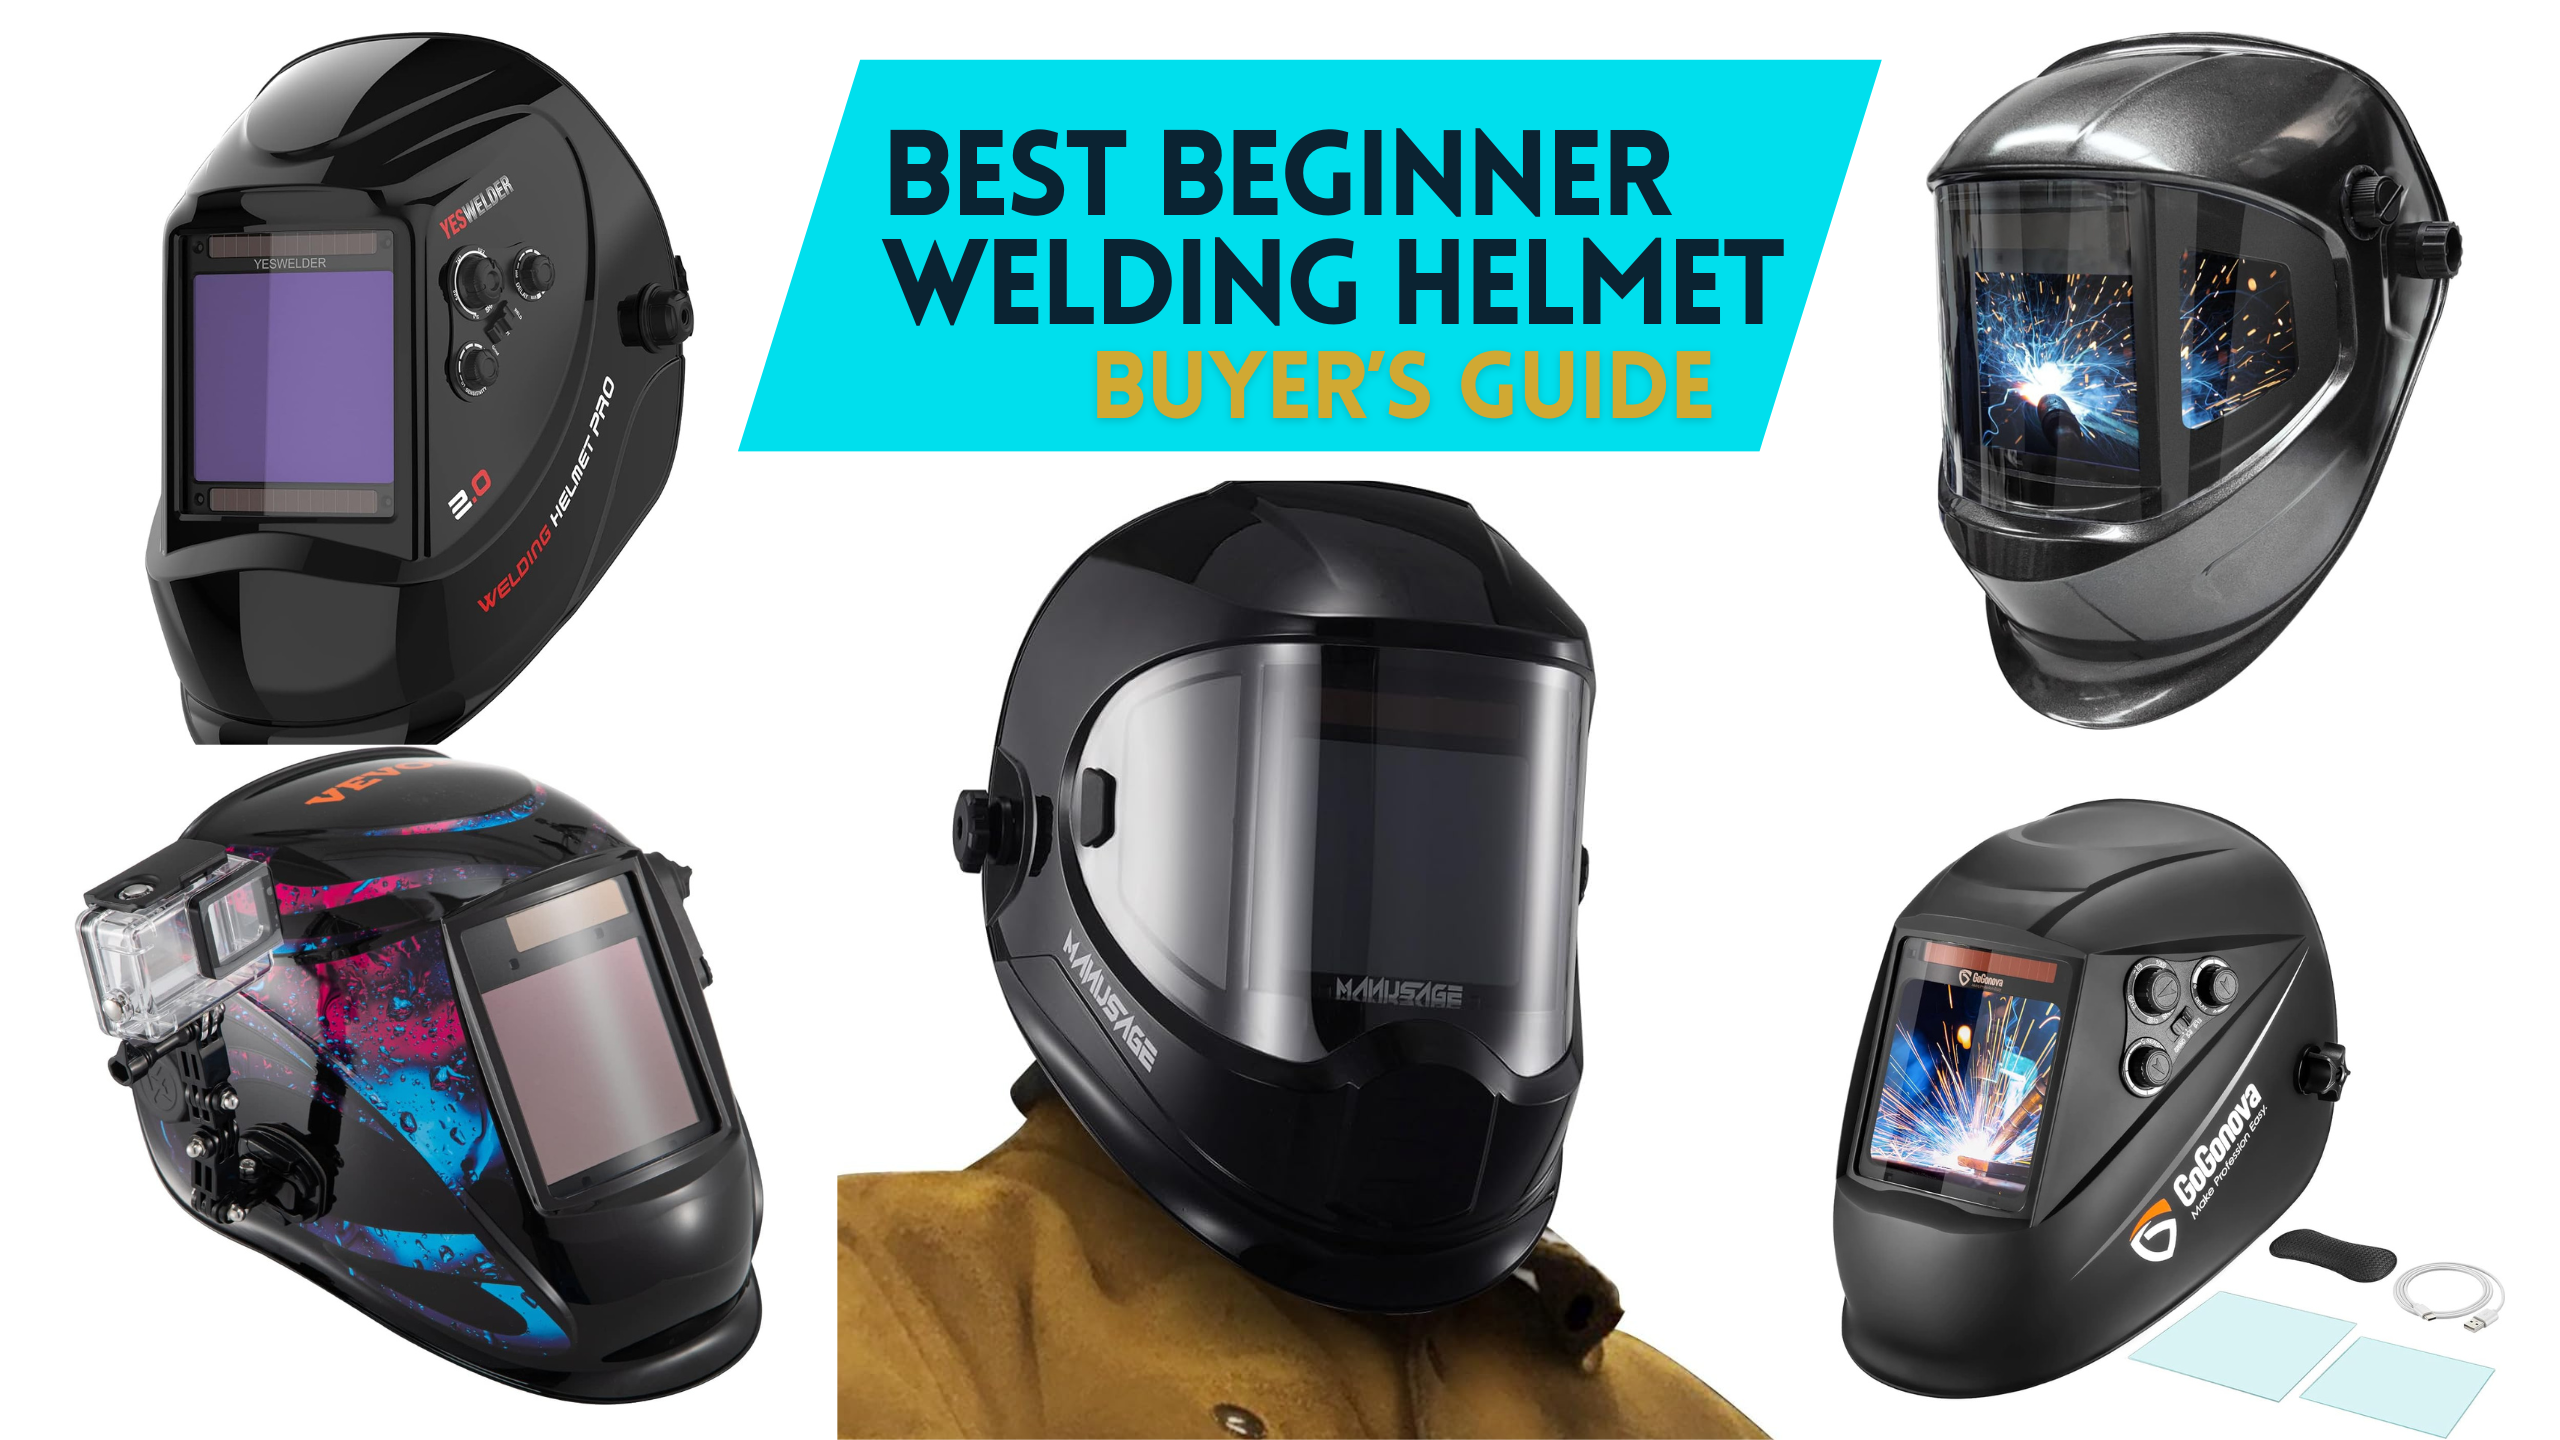 Best Beginner Welding Helmet